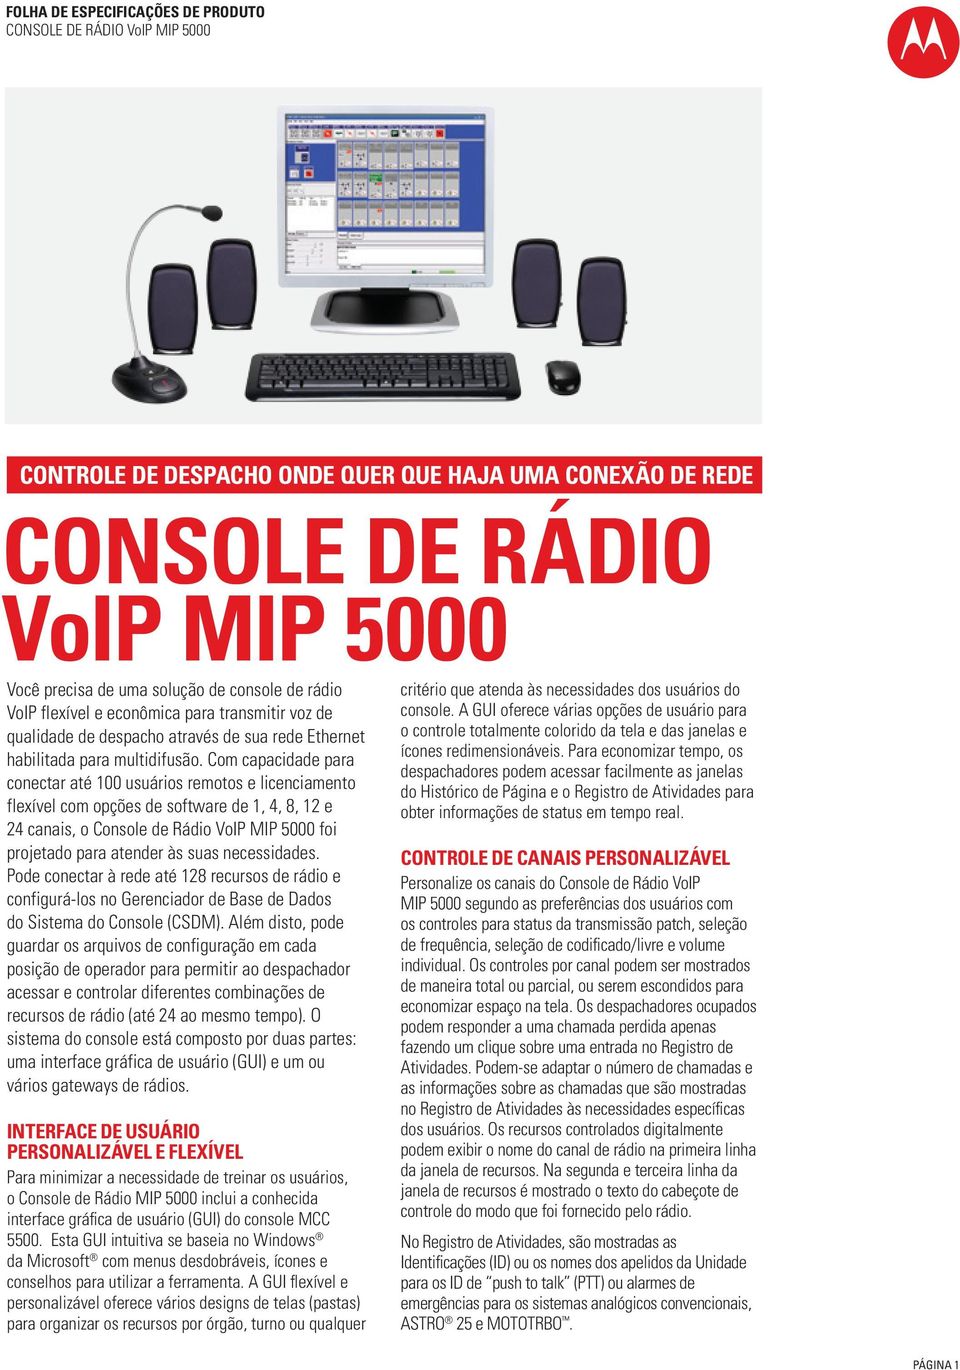 Com capacidade para conectar até 100 usuários remotos e licenciamento flexível com opções de software de 1, 4, 8, 12 e 24 canais, o Console de Rádio VoIP MIP 5000 foi projetado para atender às suas